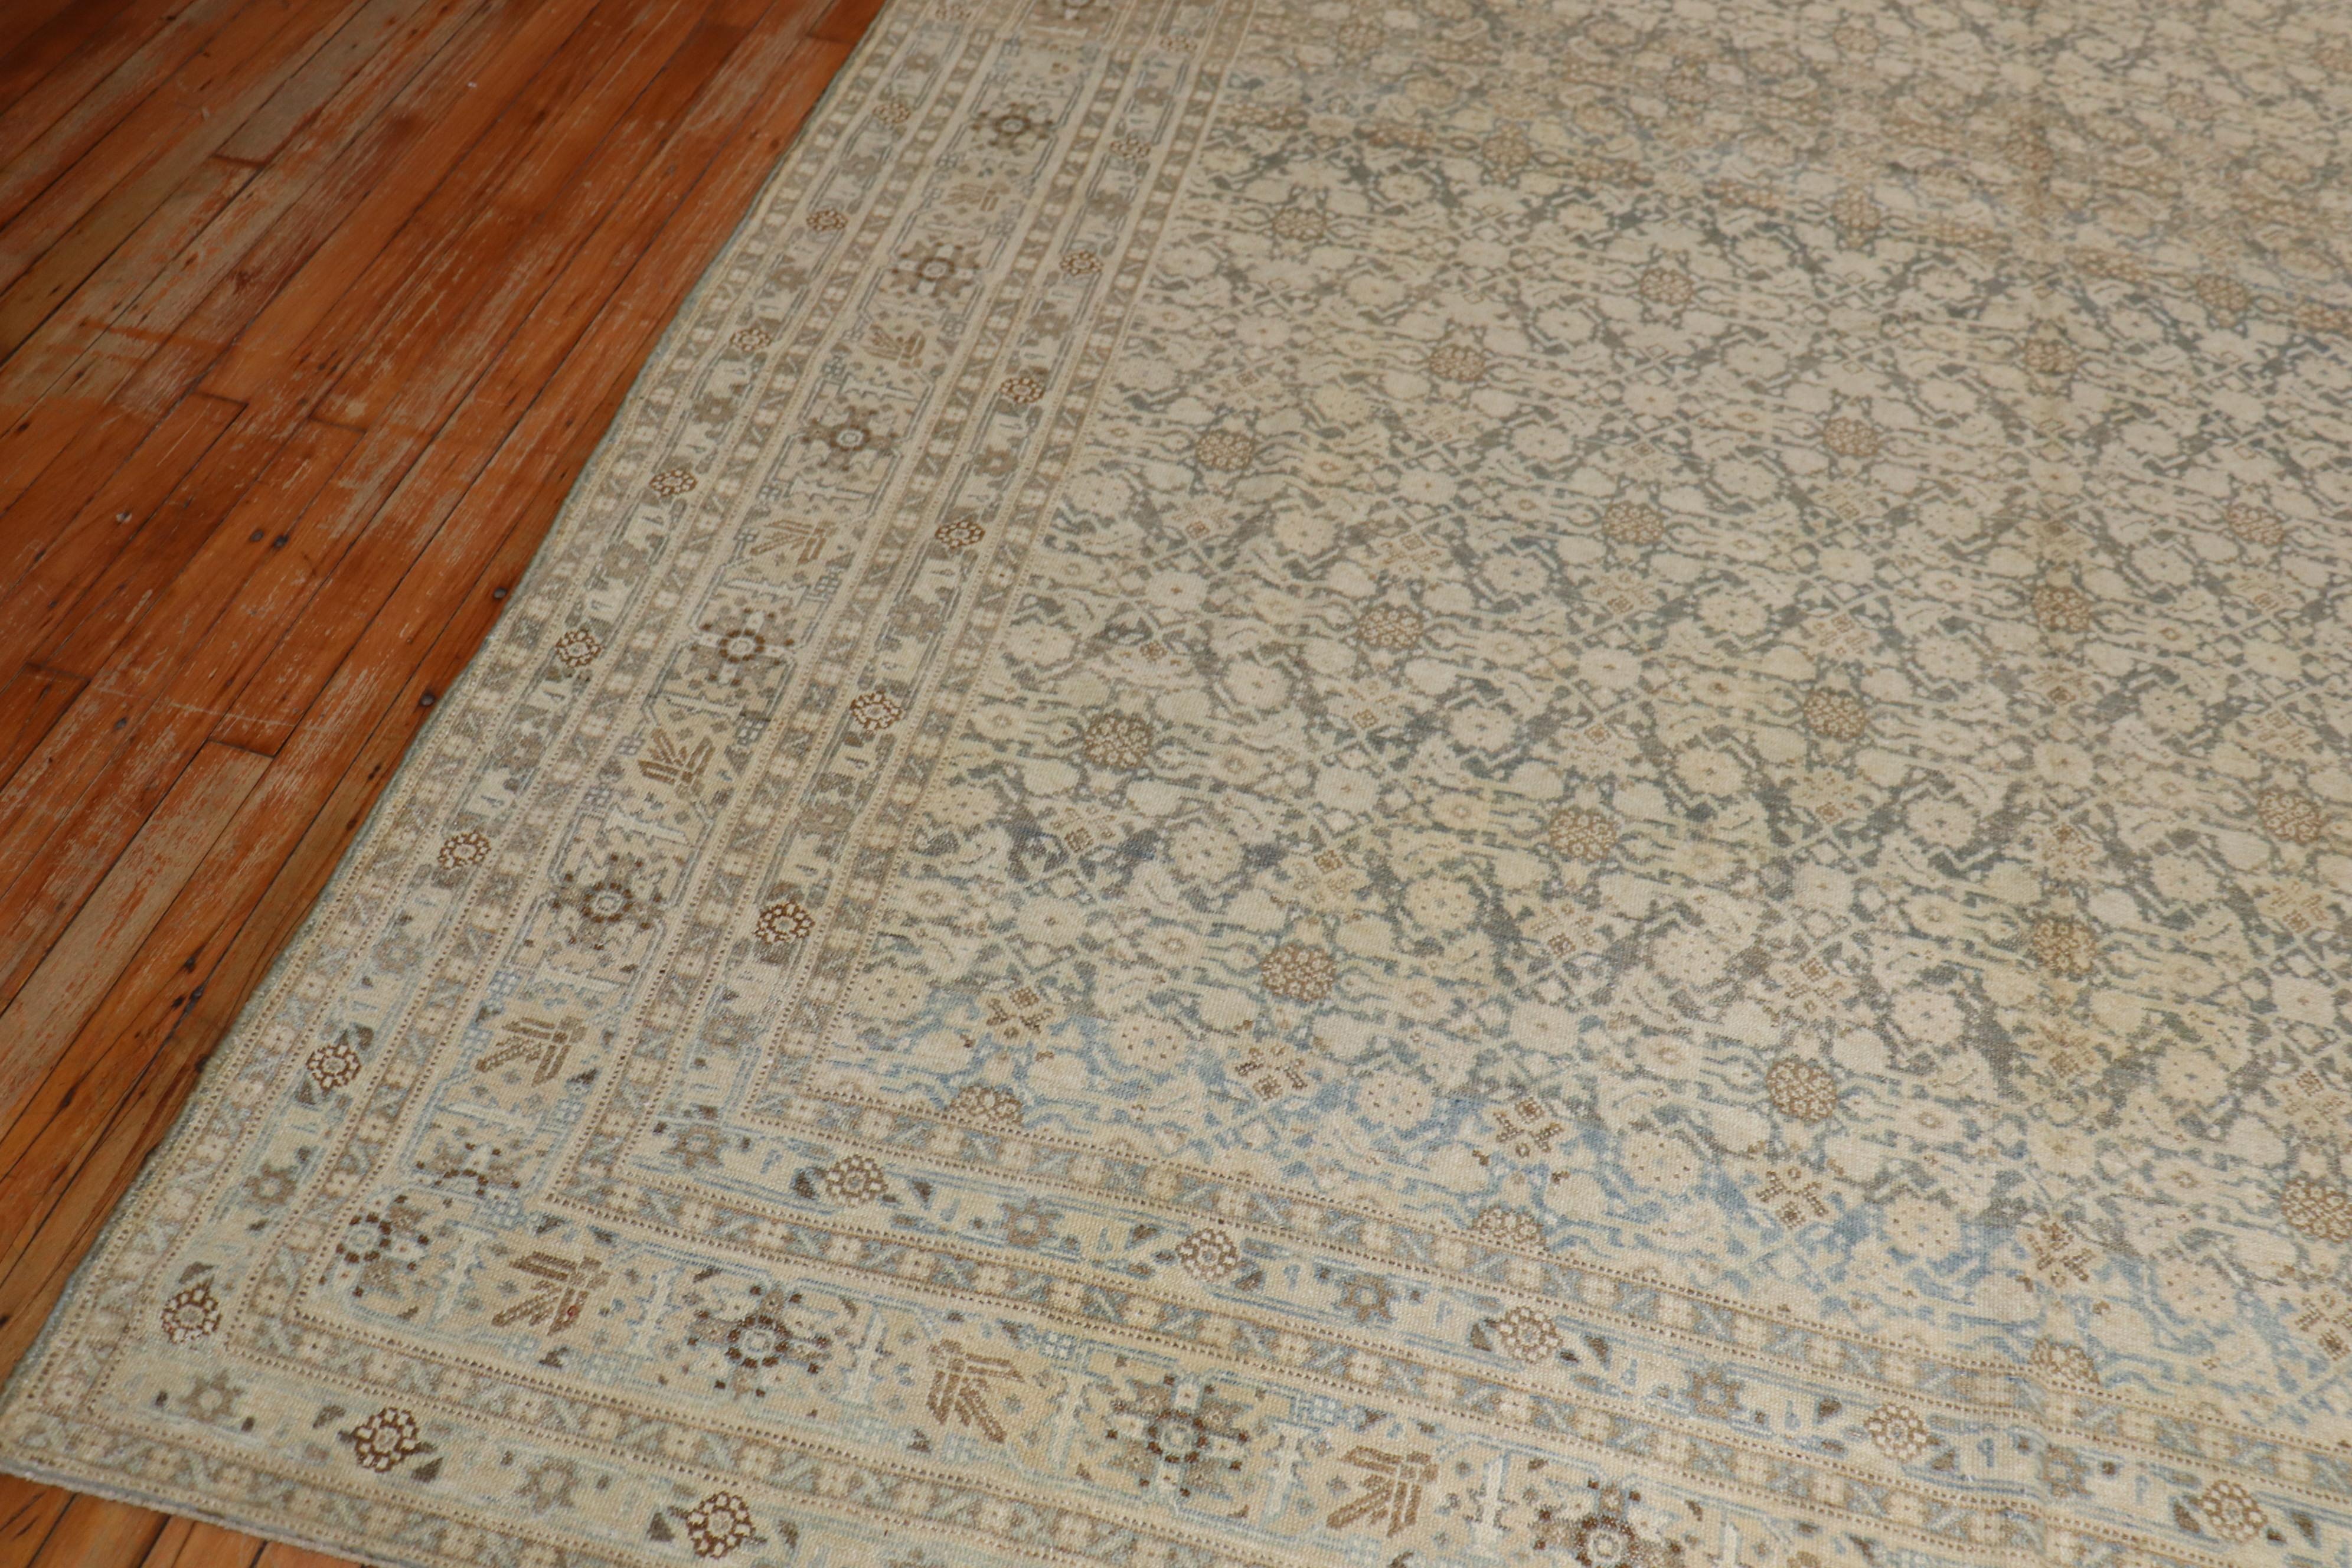 Eine frühe 20. Jahrhundert persischen Täbriz Teppich mit Ihrem klassischen Herati-Motiv in braun, grün, tan Akzente Berührungen von hellblau ein Ende

Maße: 7'`11'' x 10'4''

Ein antiker Täbris kann aus Baumwolle oder Seide bestehen und als